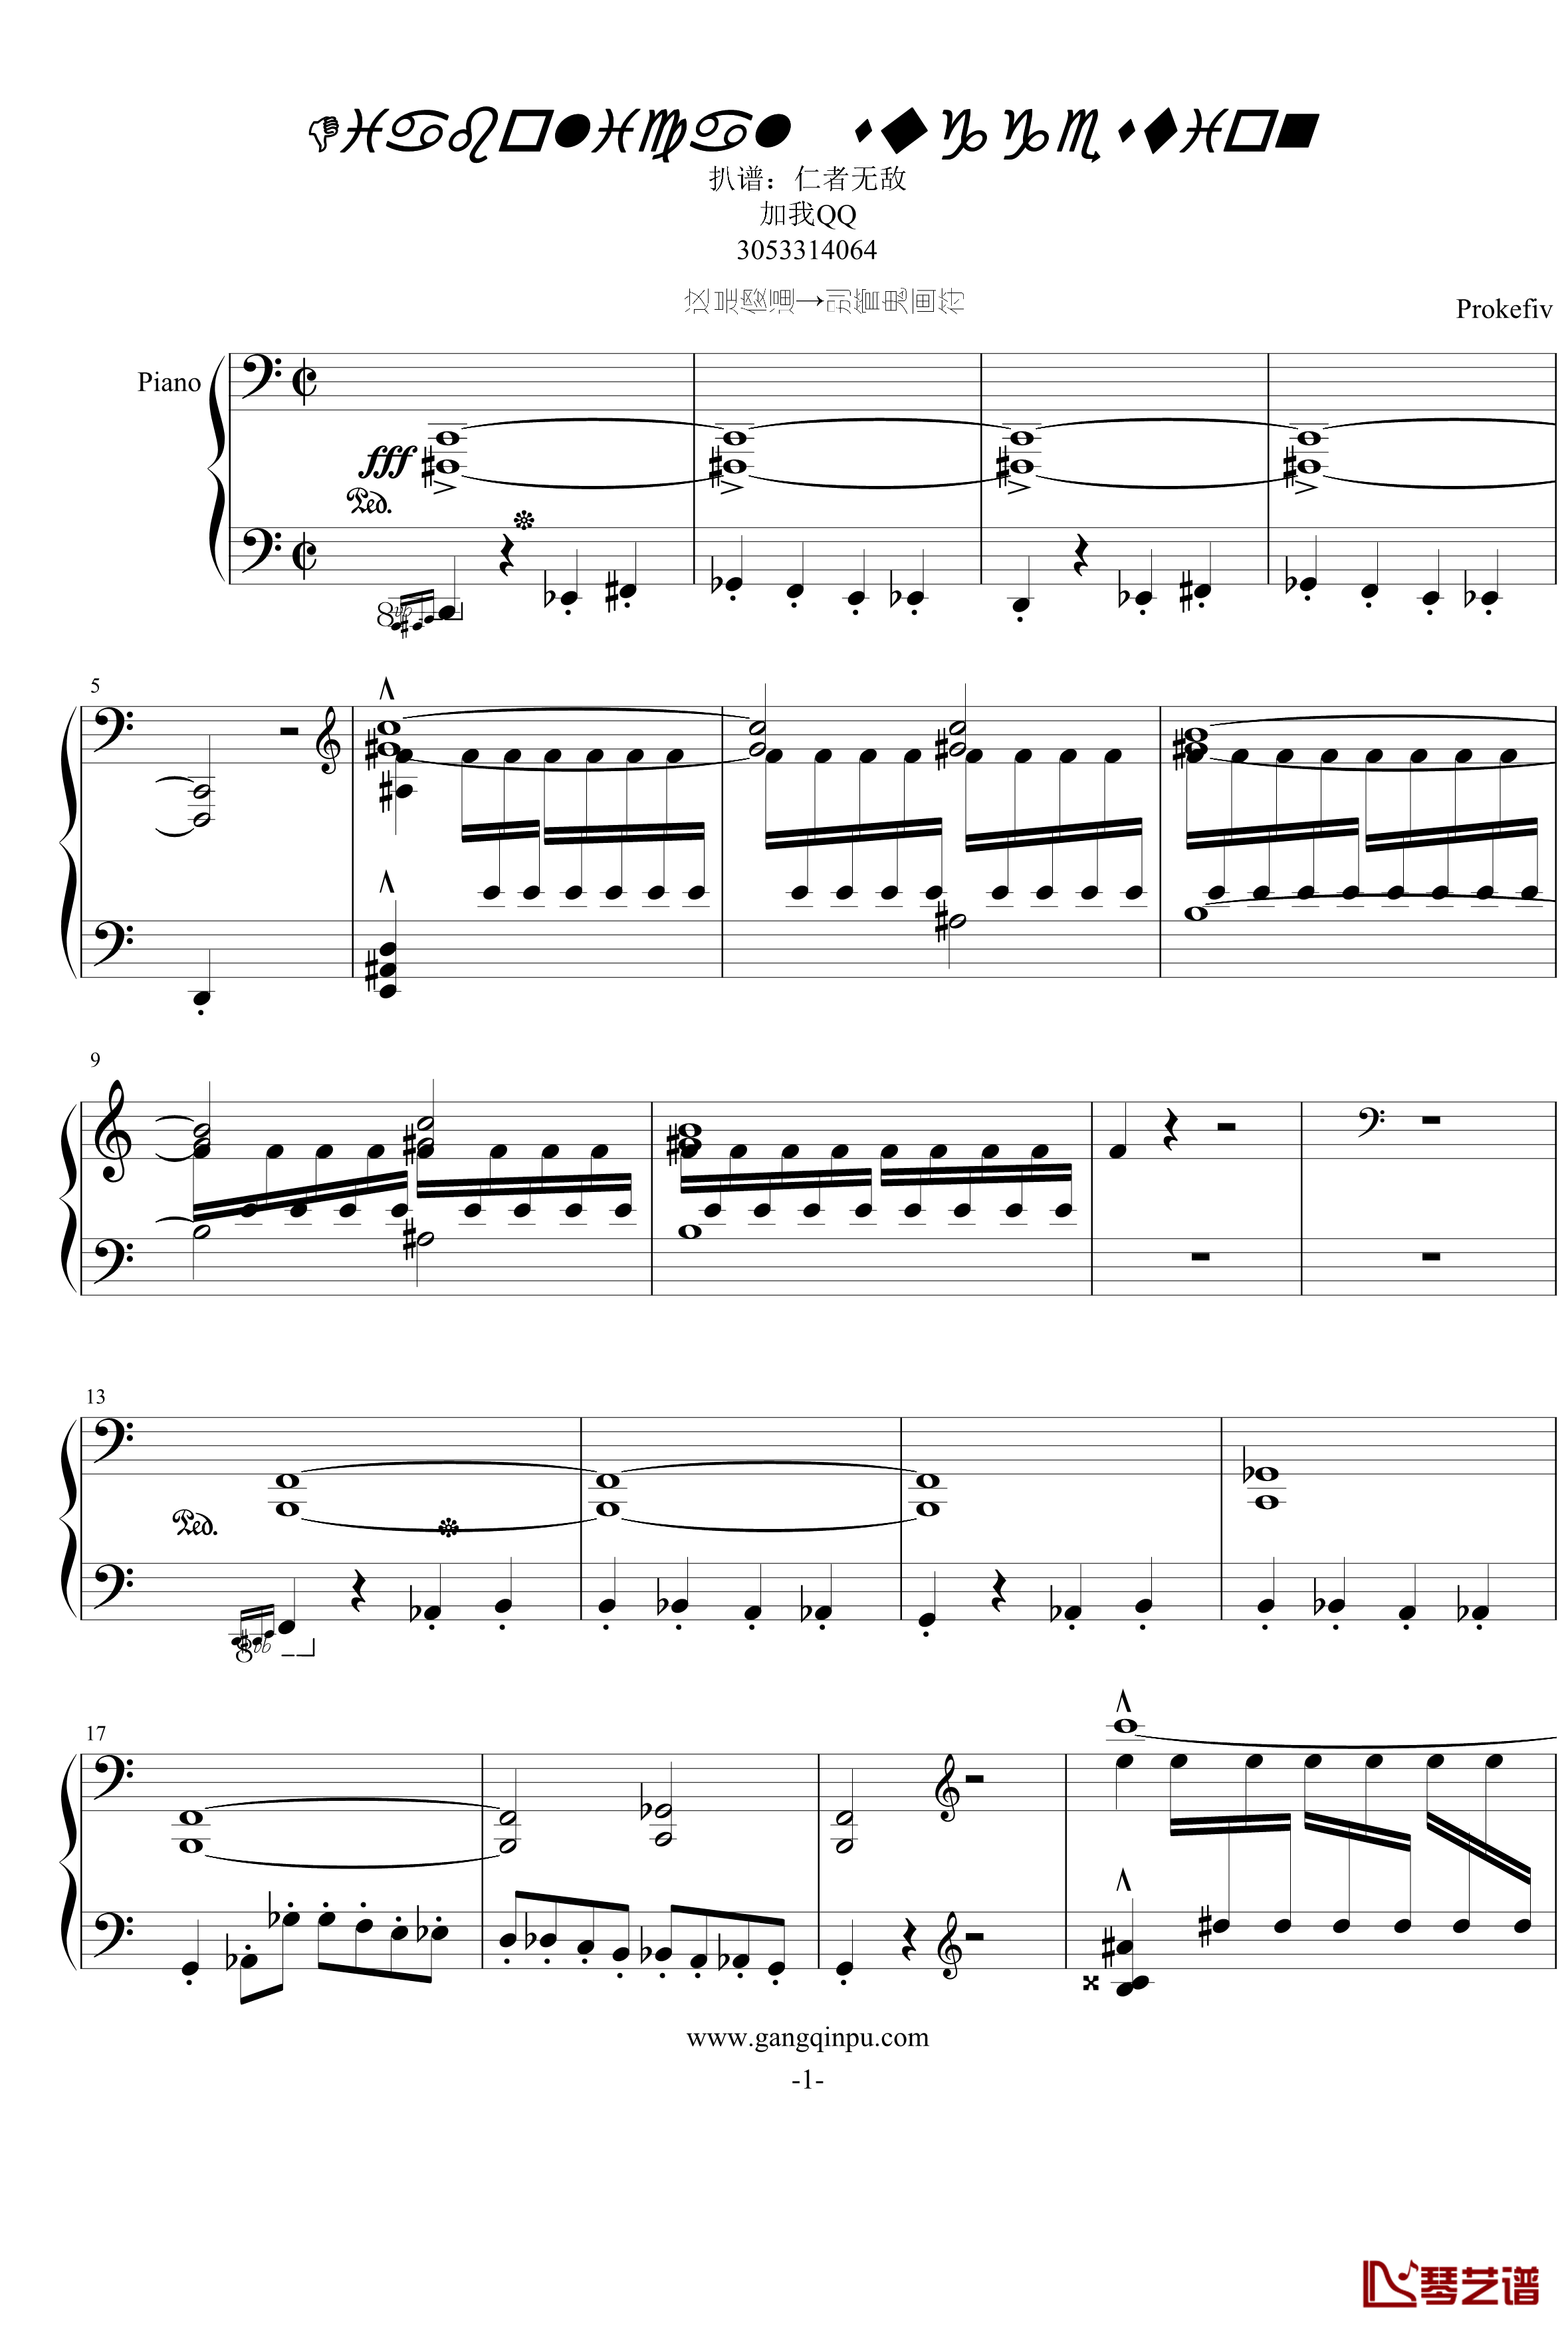 普罗科菲耶夫四首小品之四：魔鬼的诱惑钢琴谱-普罗科非耶夫1